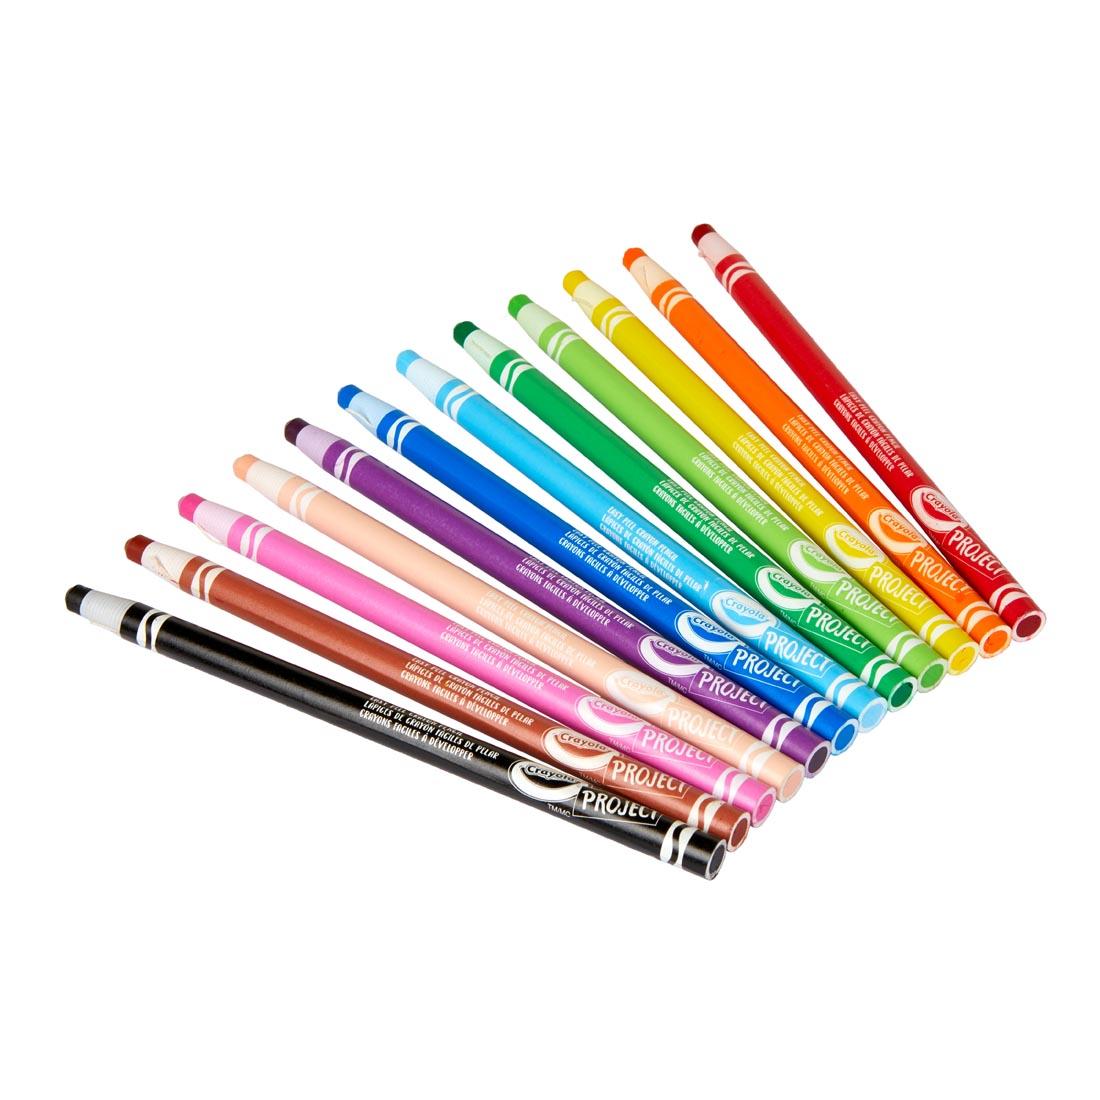 12 Colors of Crayola Easy-Peel Crayon Pencils